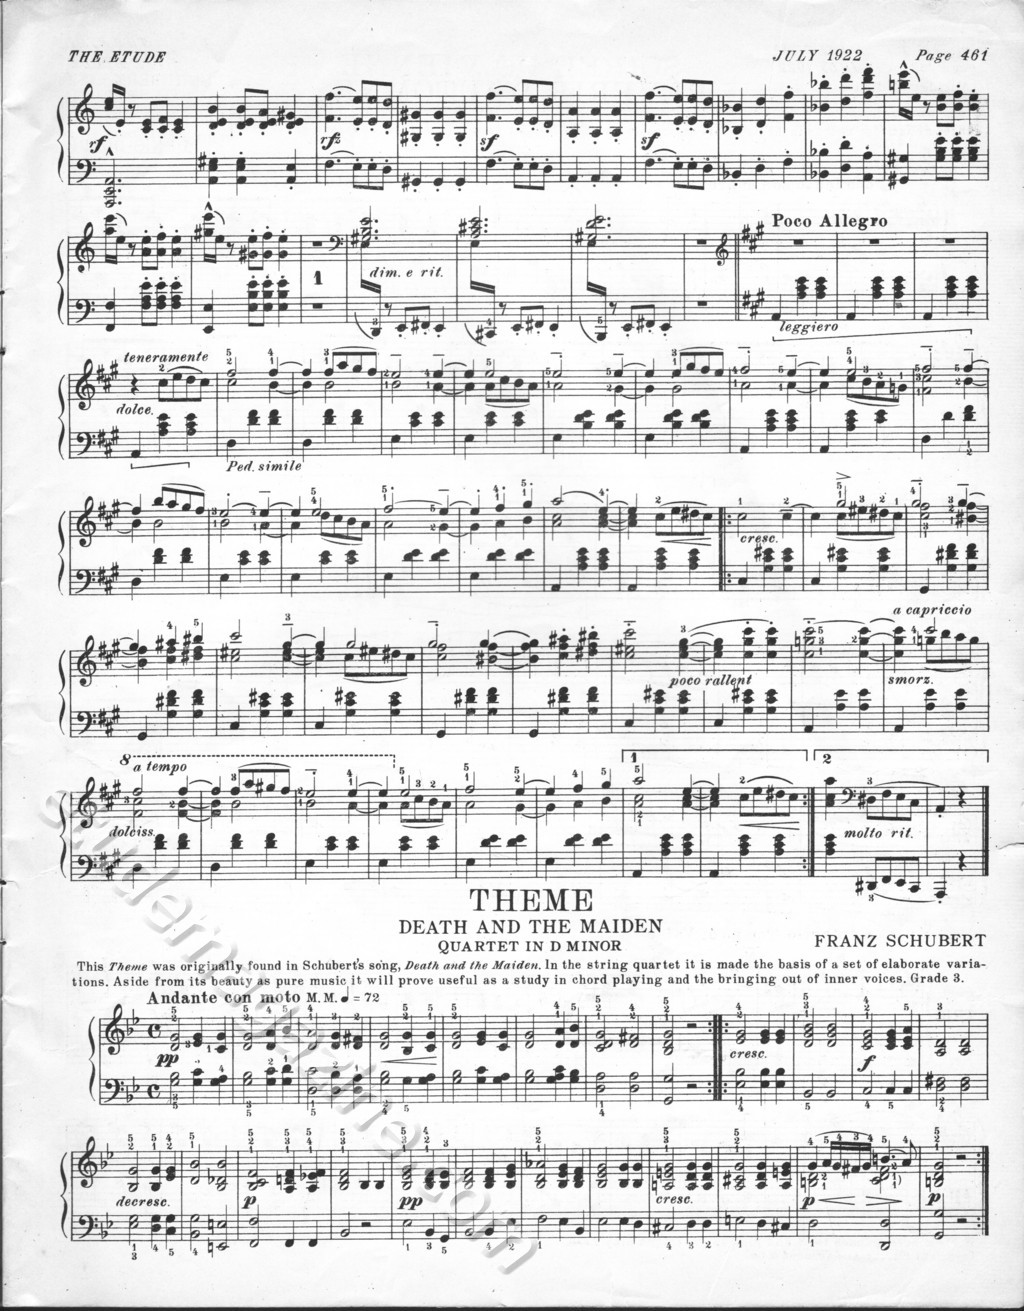 Soirée de Vienne, No. 6. Schubert-Liszt. Theme from Death and the Maiden, Schubert.